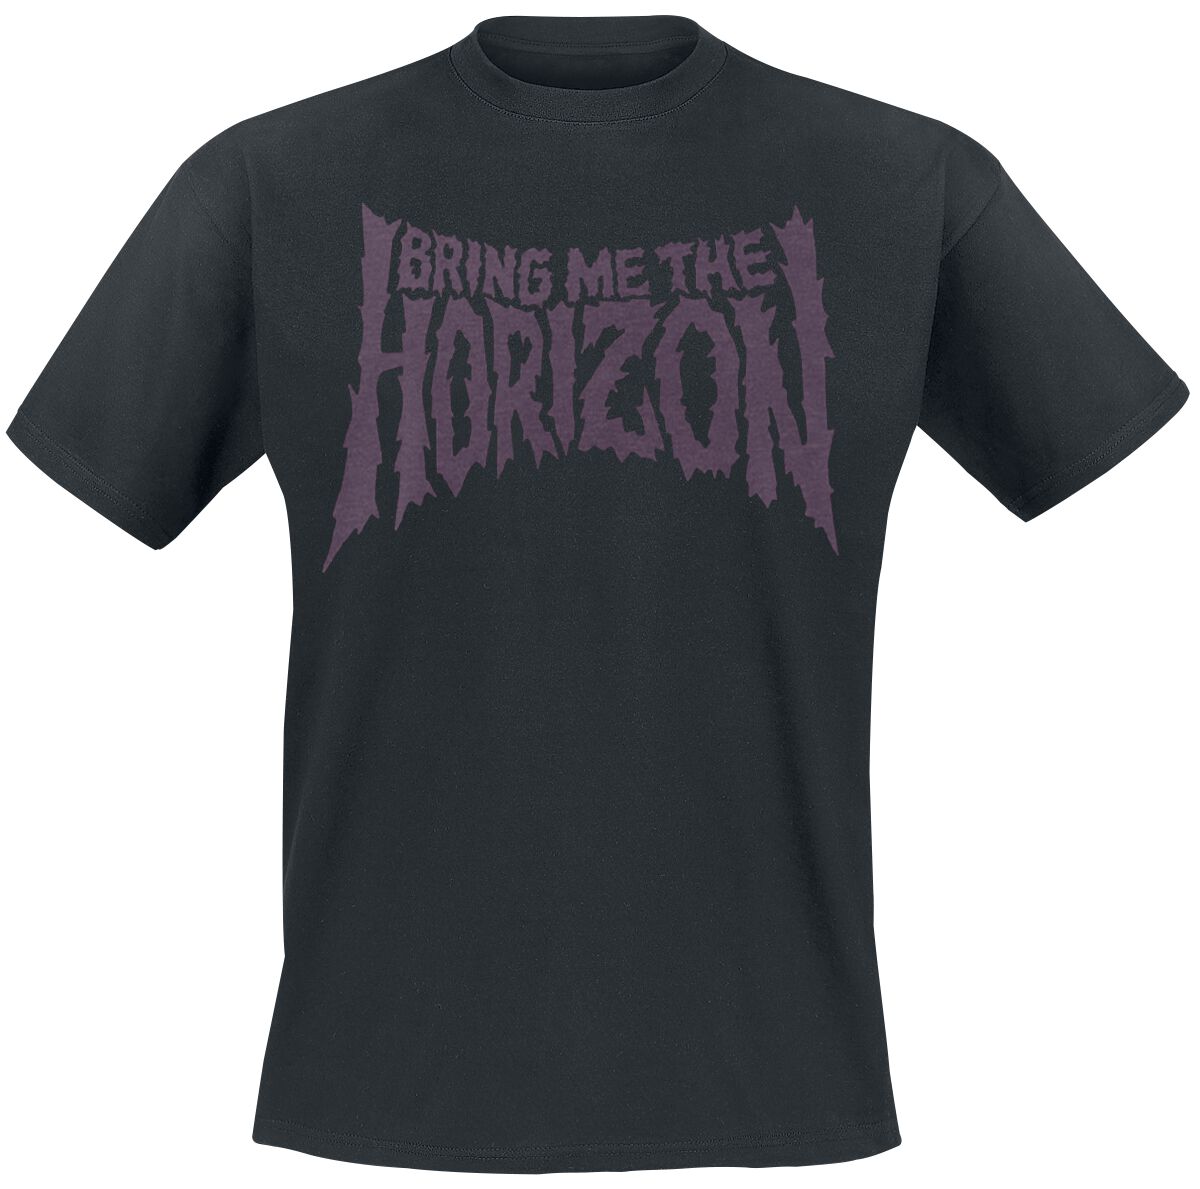 Bring Me The Horizon T-Shirt - Reaper - S bis 3XL - für Männer - Größe S - schwarz  - Lizenziertes Merchandise!